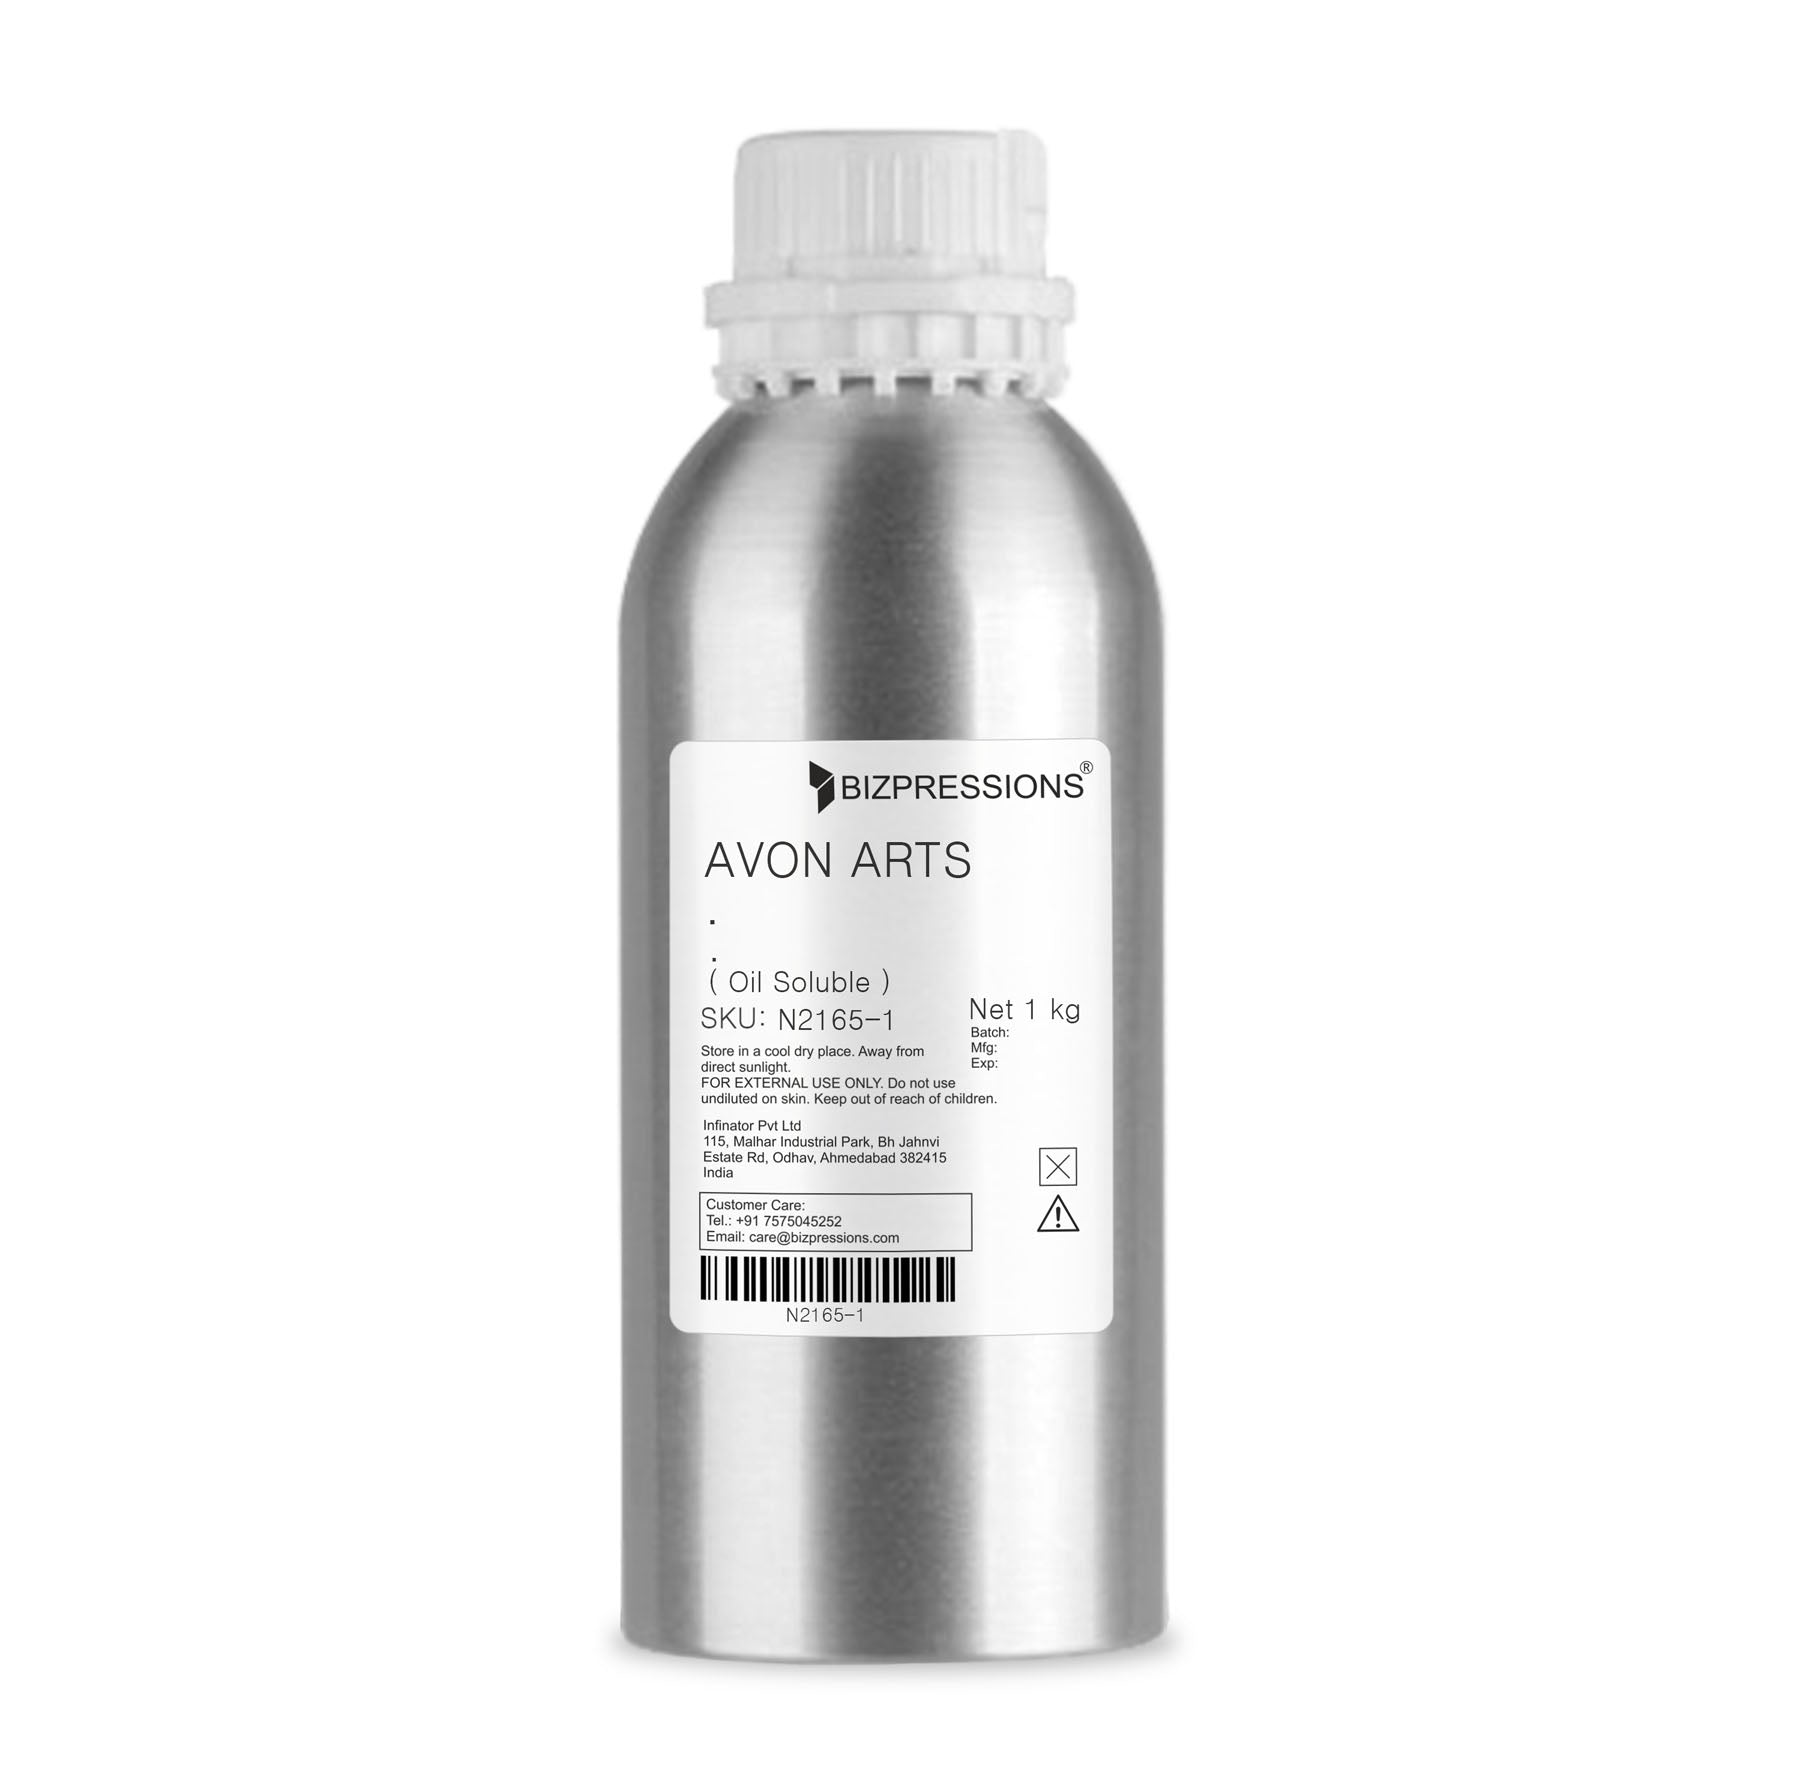 AVON ARTS - Fragrance ( Oil Soluble ) - 1 kg